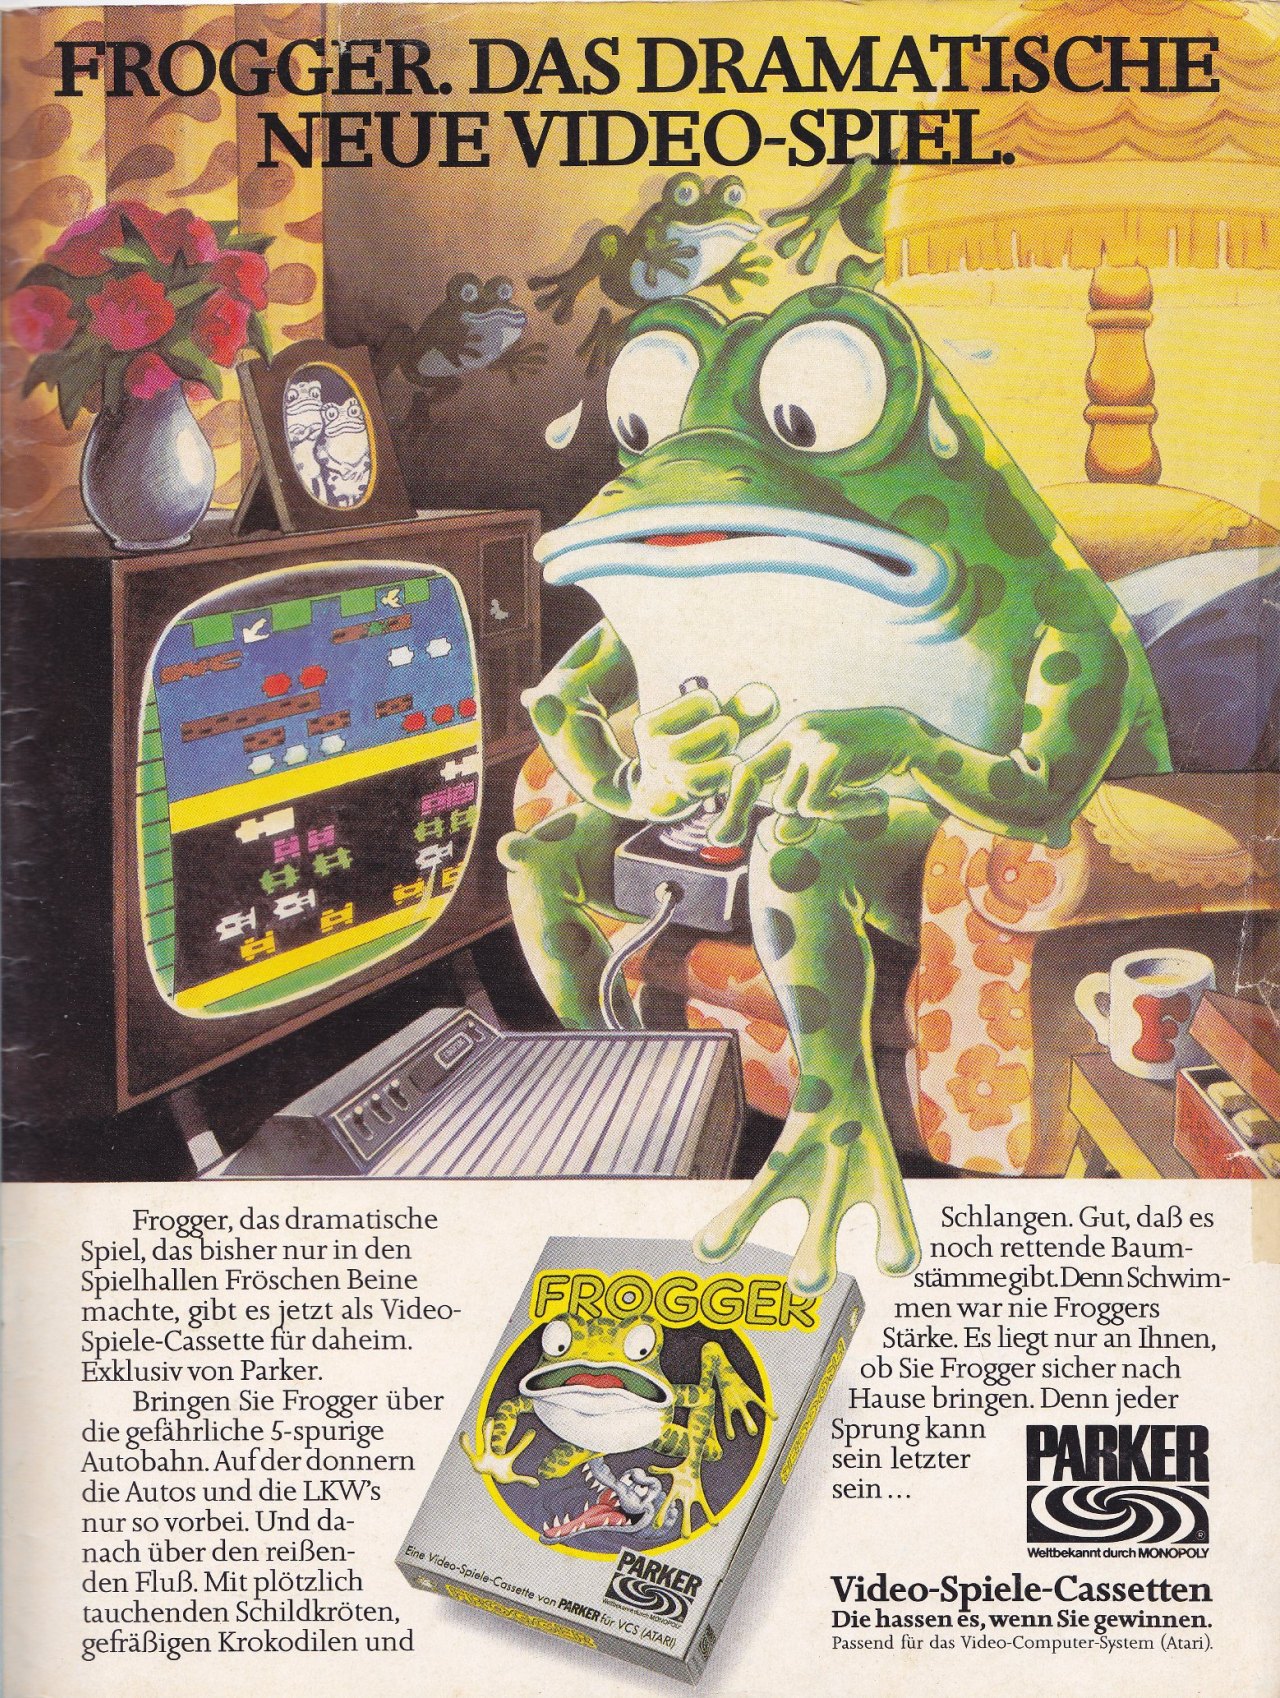 Frogger 2600 DE PrintAdvert.jpg